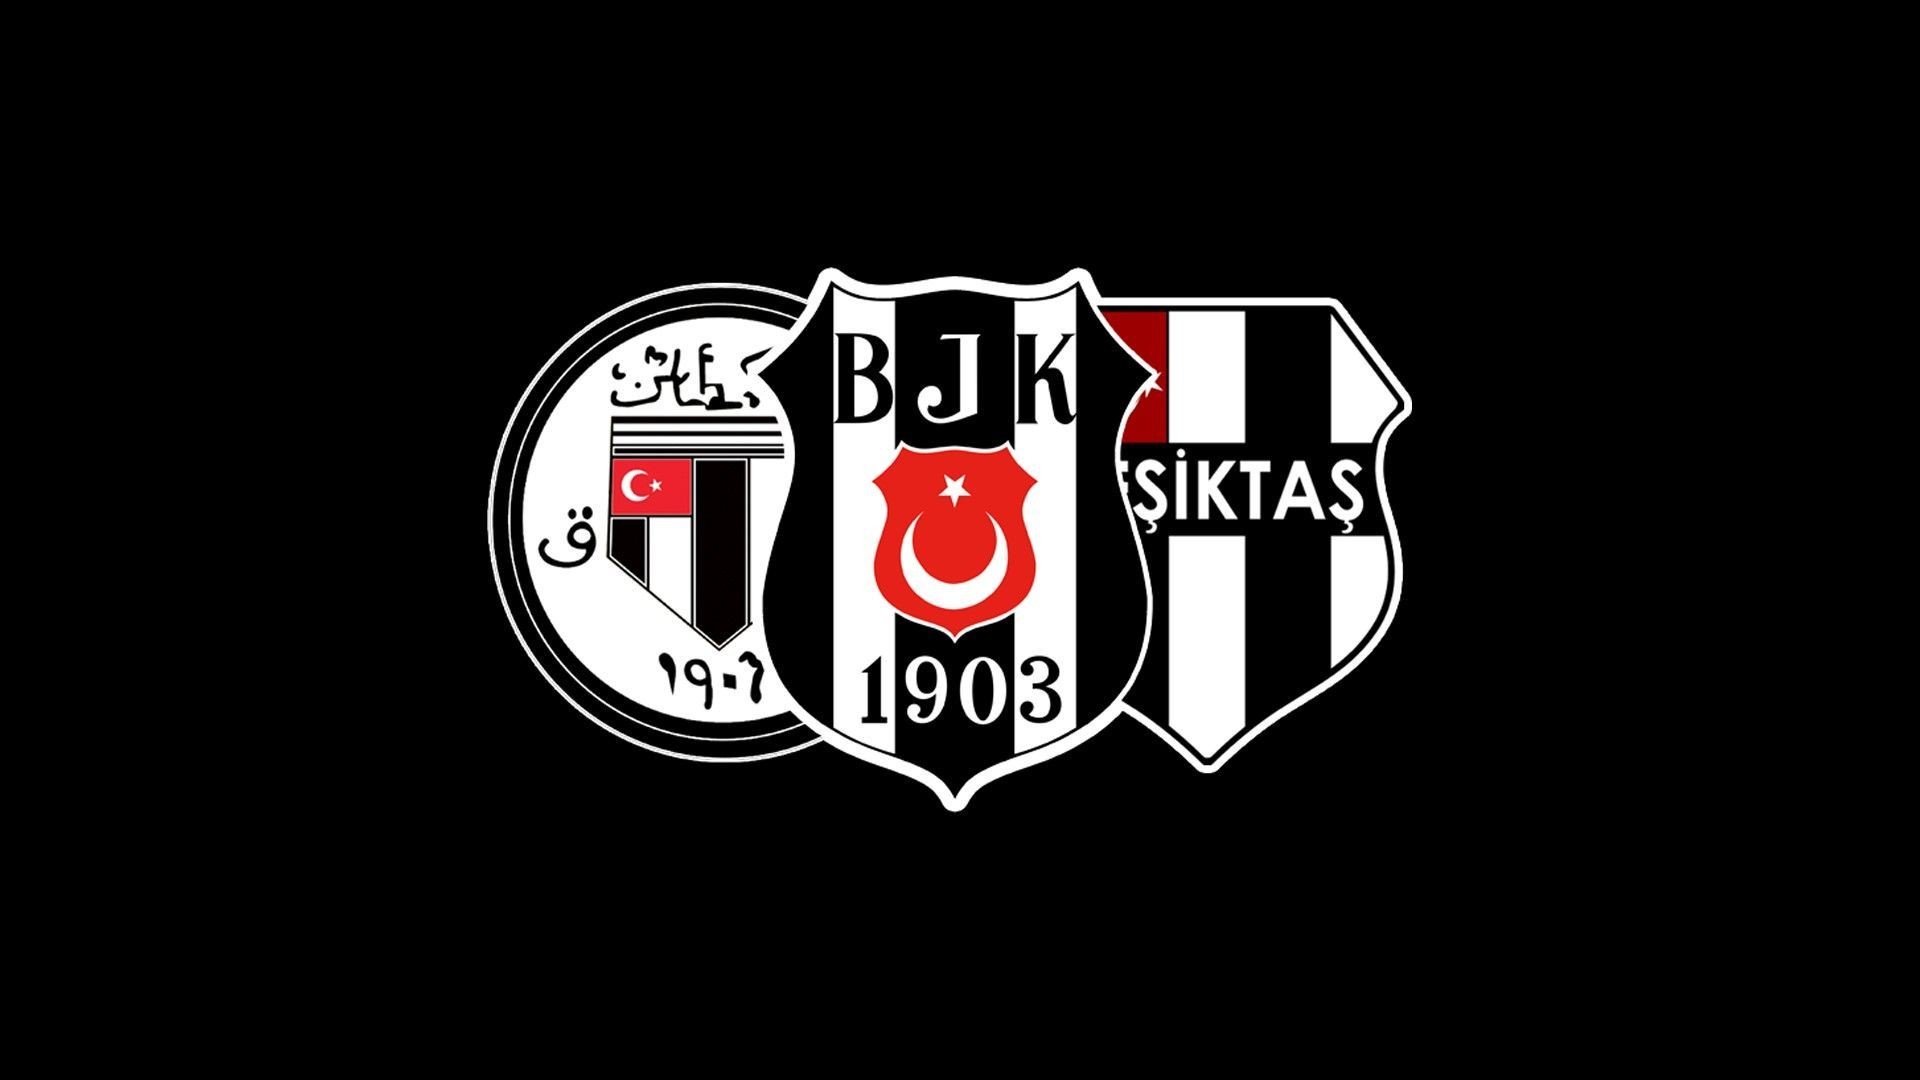 Besiktas J.K., Soccer clubs, Soccer, Logo, Black, White, Turkish Wallpaper